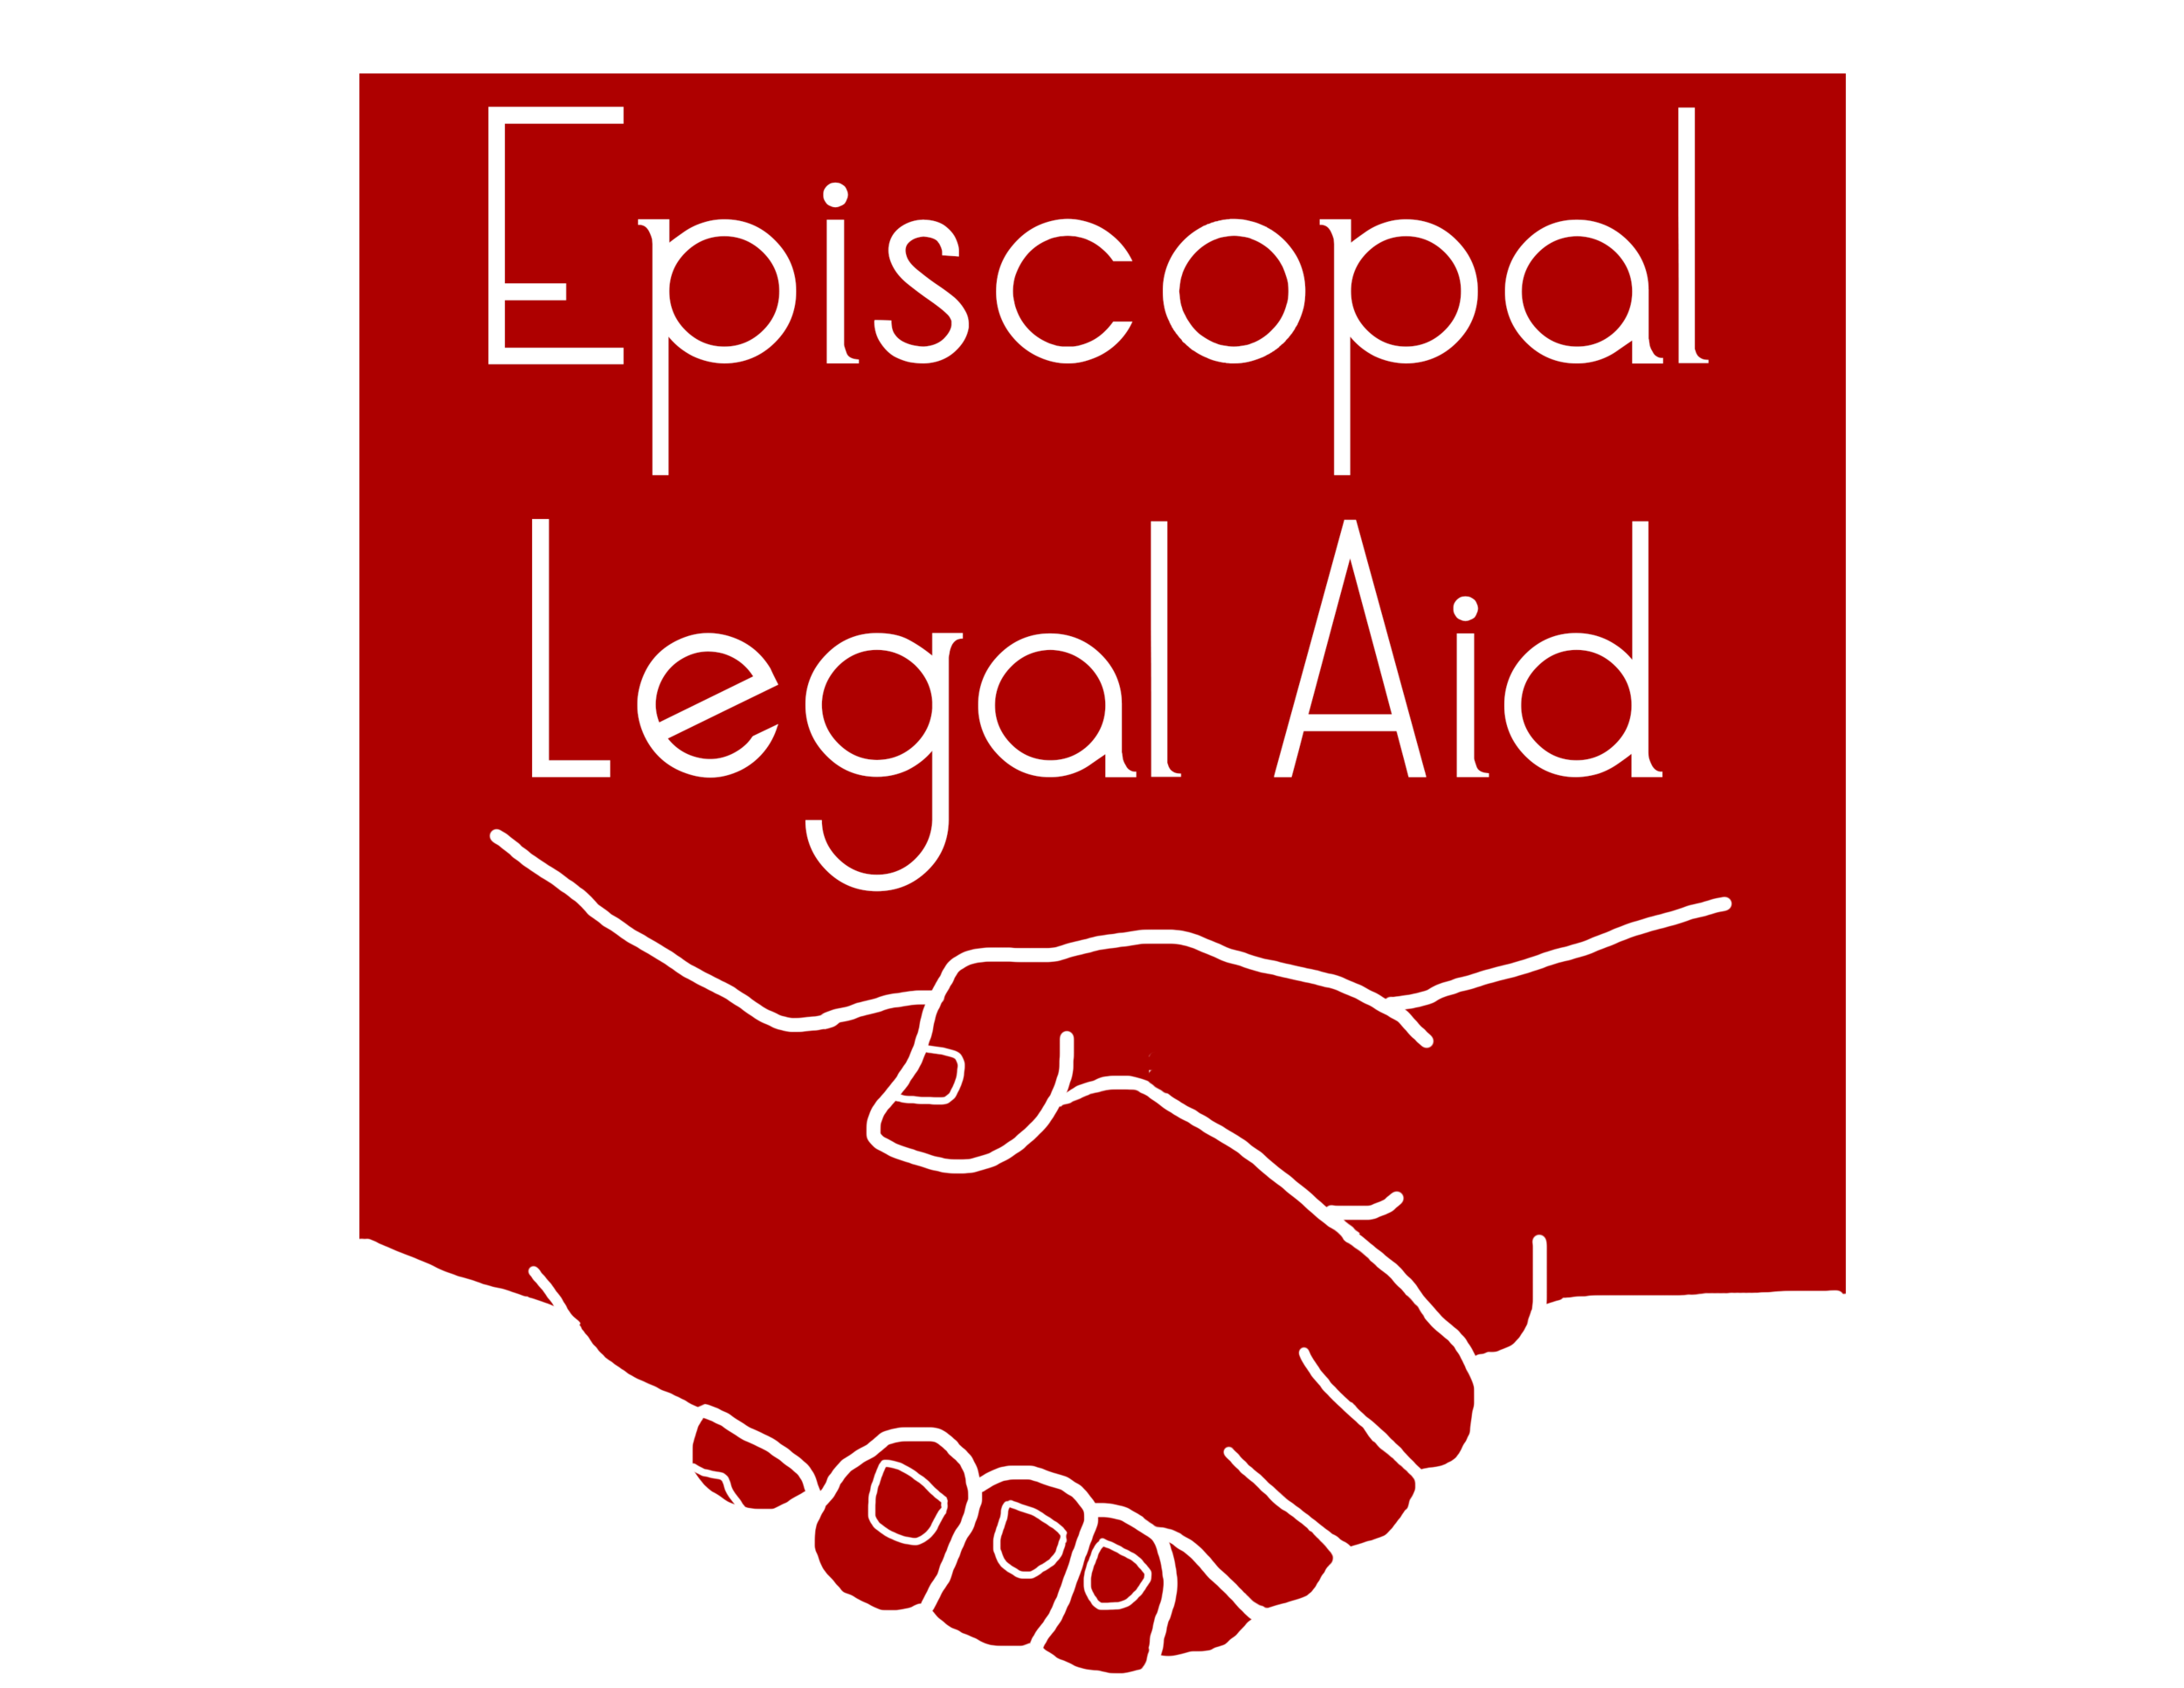 Episcopal Legal Aid